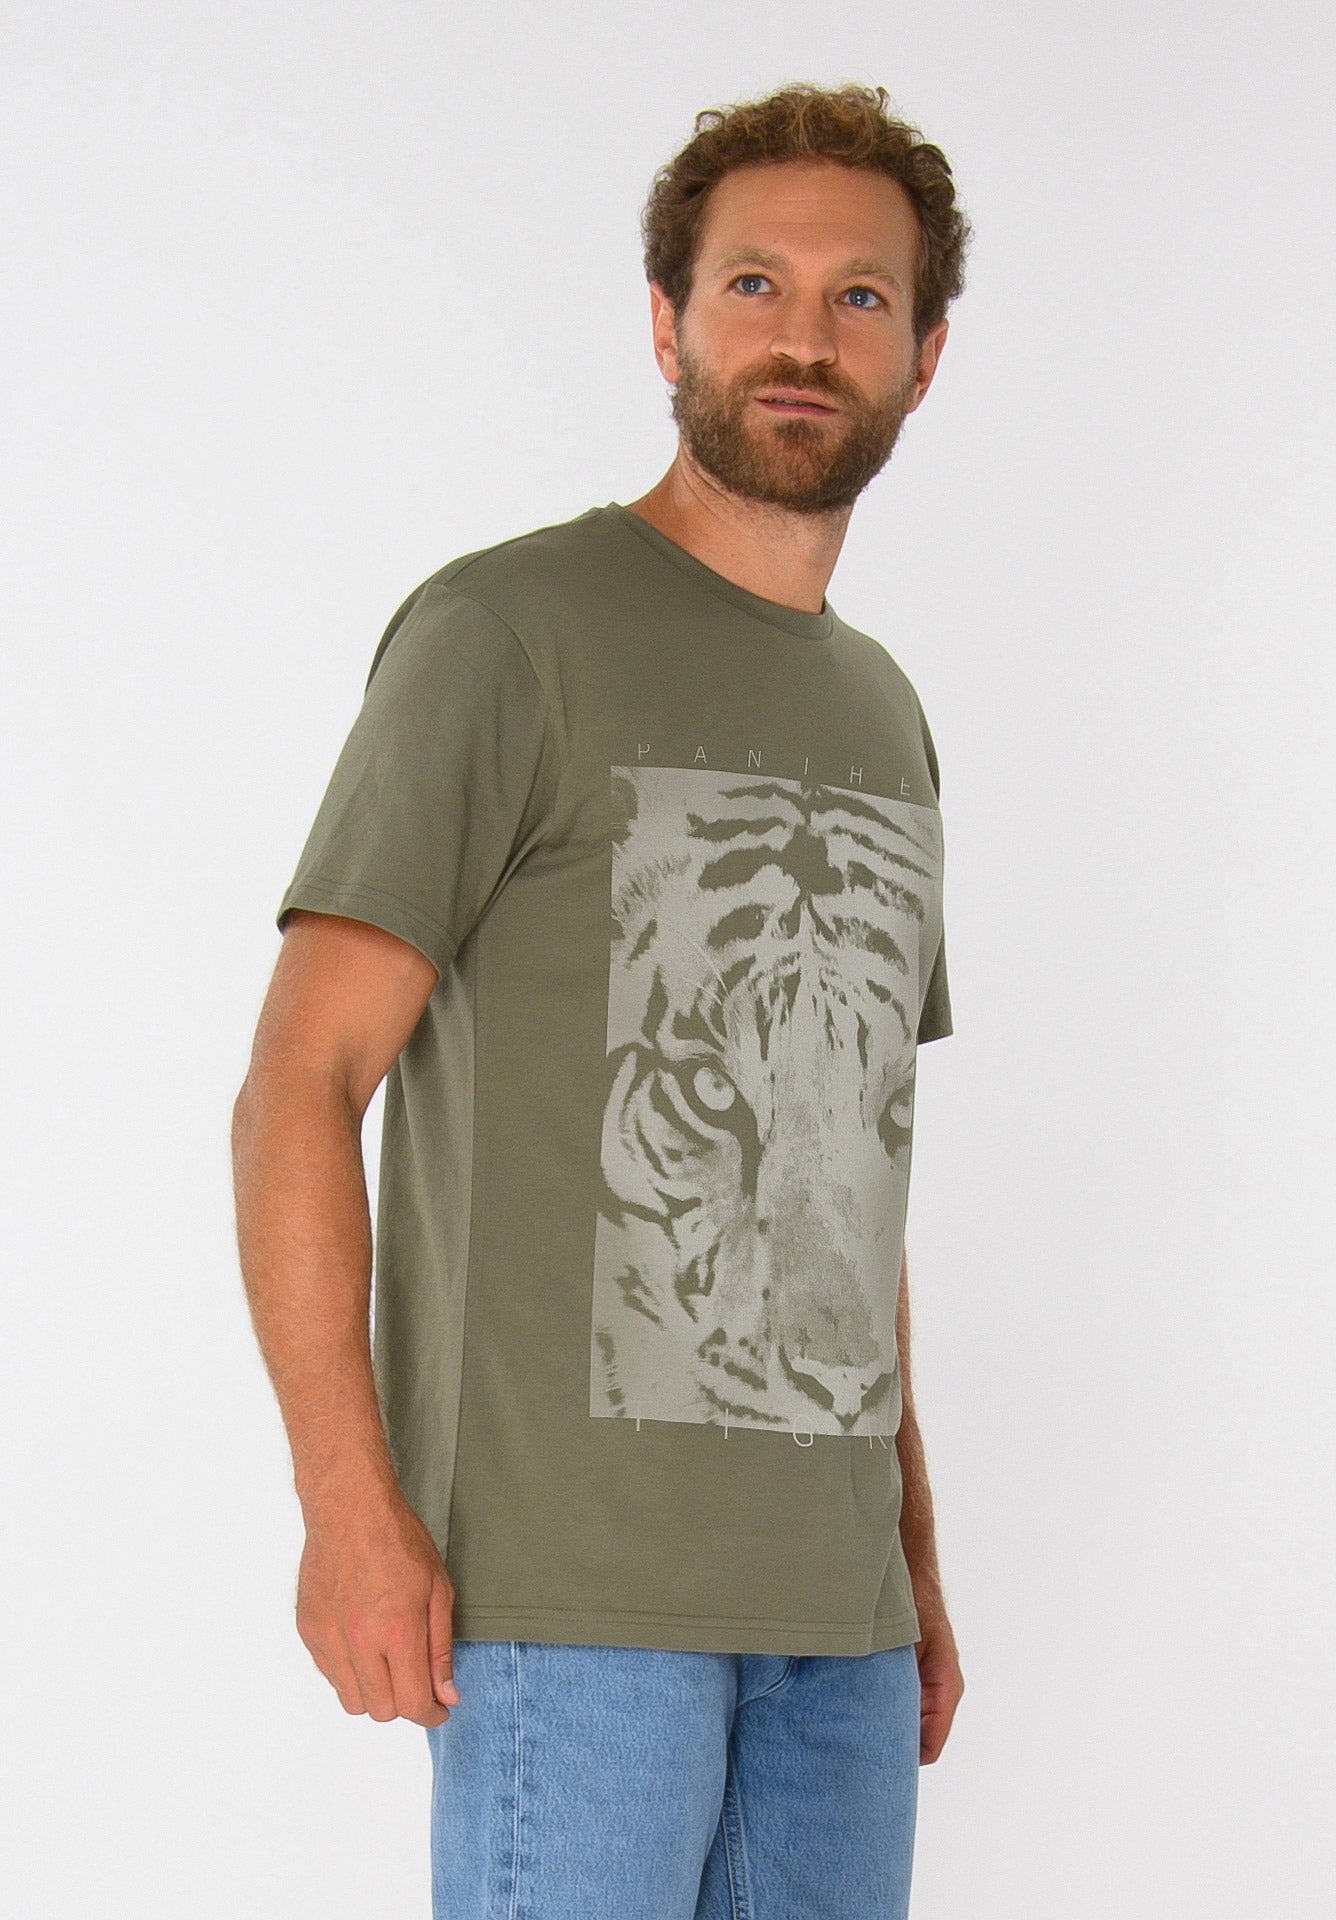 TT02 T-Shirt PANTHERA TIGRIS (GOTS)